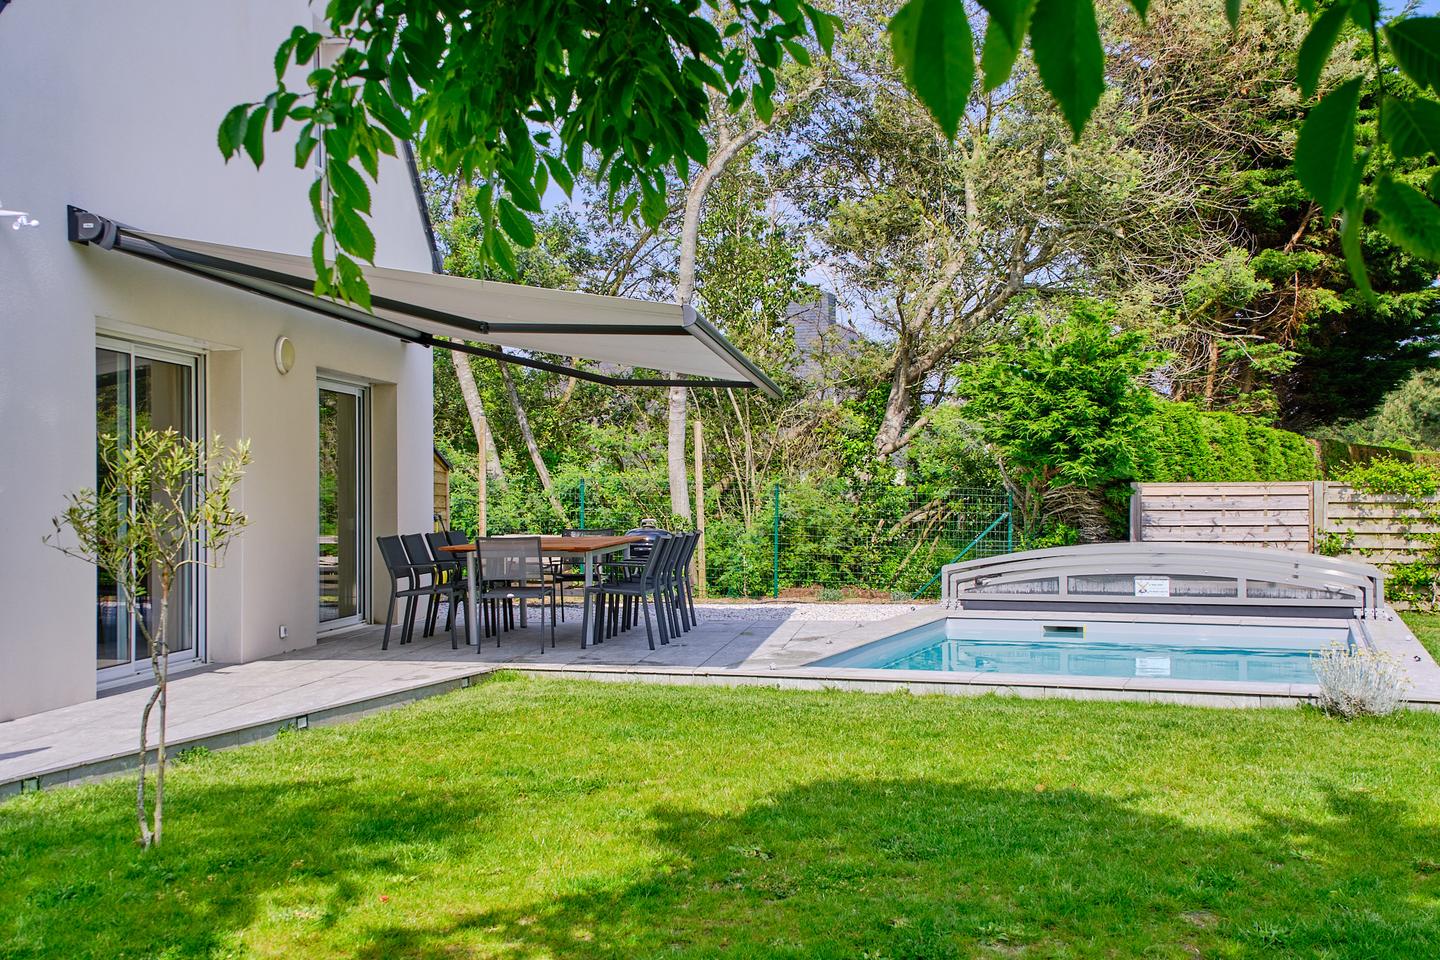 Hôte GreenGo: Grande maison familiale avec piscine pour 10 personnes, 12 max. Note de 4.9 sur une autre plateforme - Image 27